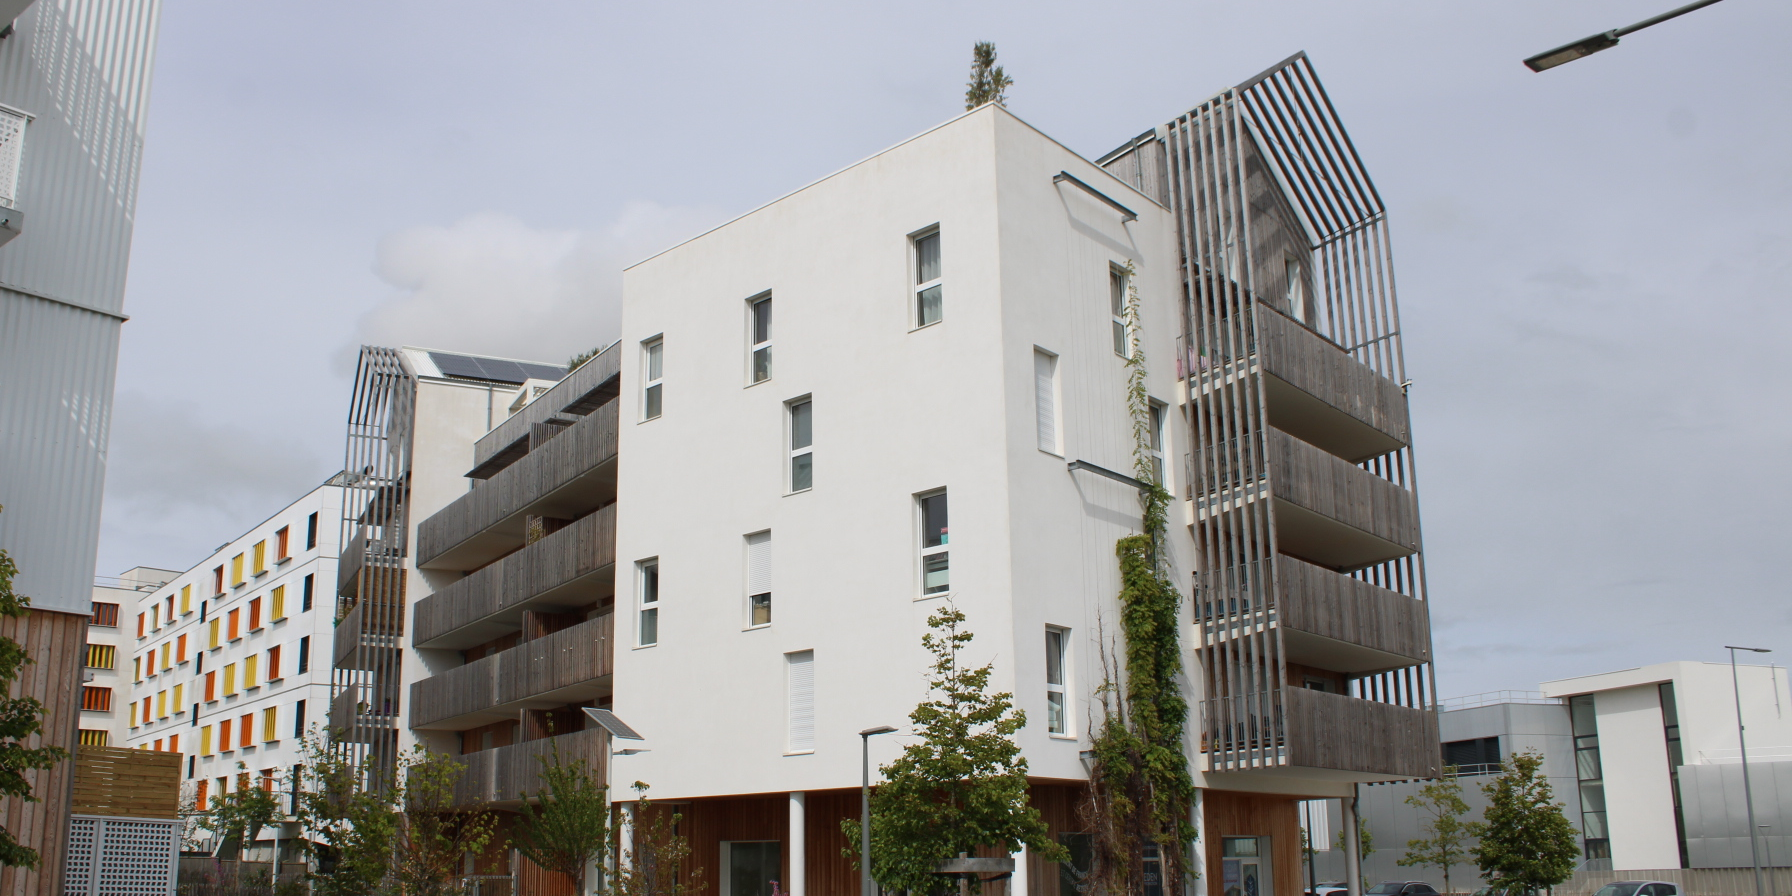 À La Rochelle, les audaces d'un bâtiment parmi les plus durables de France